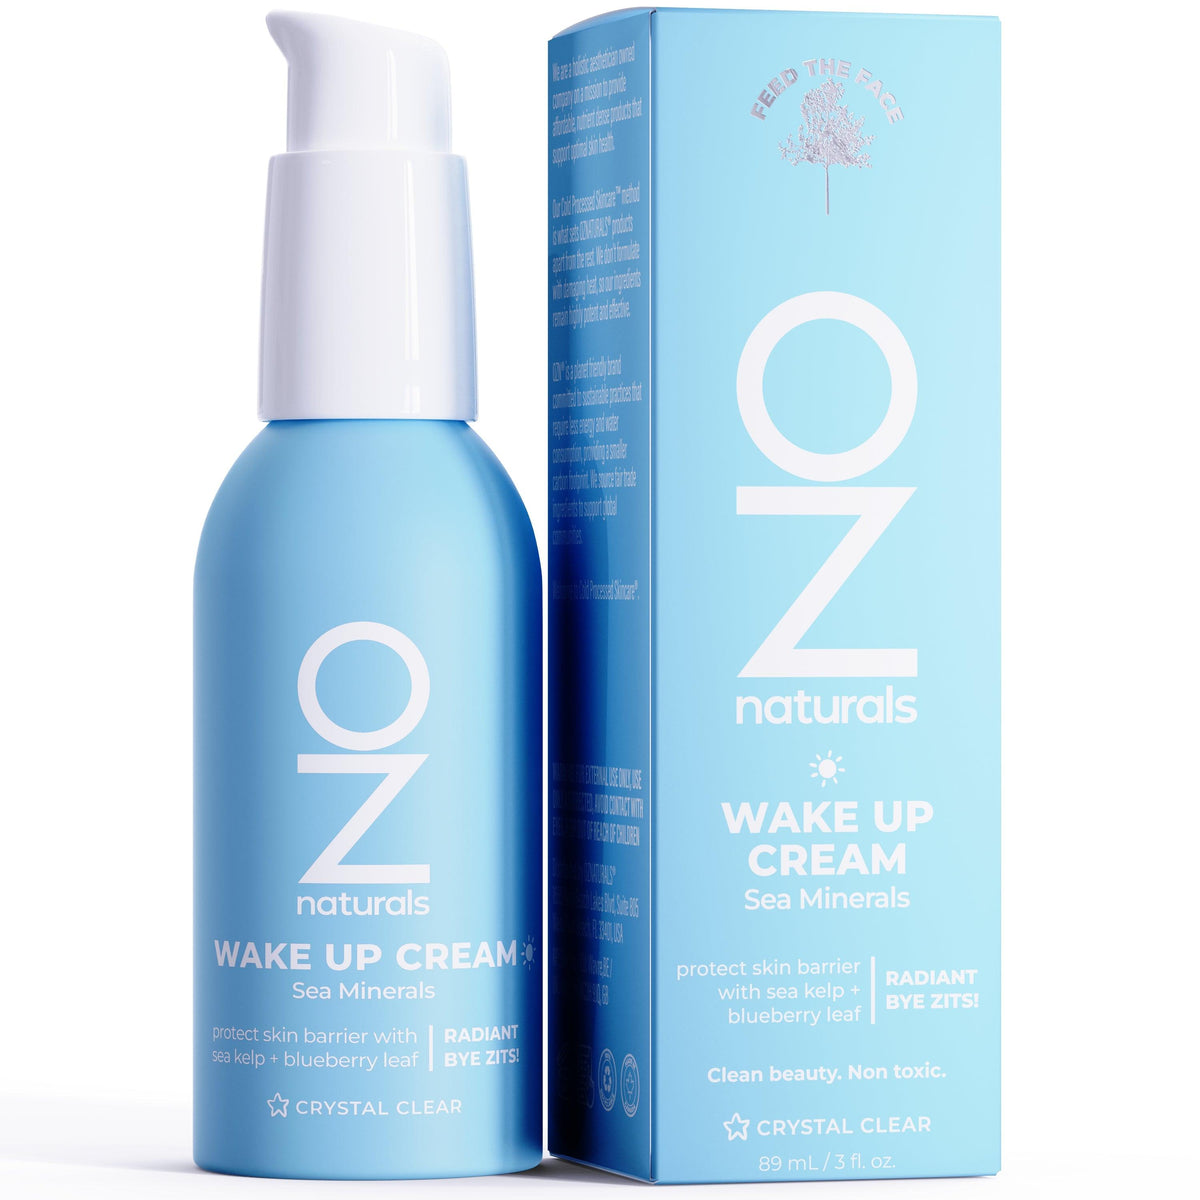 Wake Up Cream - OZNaturals